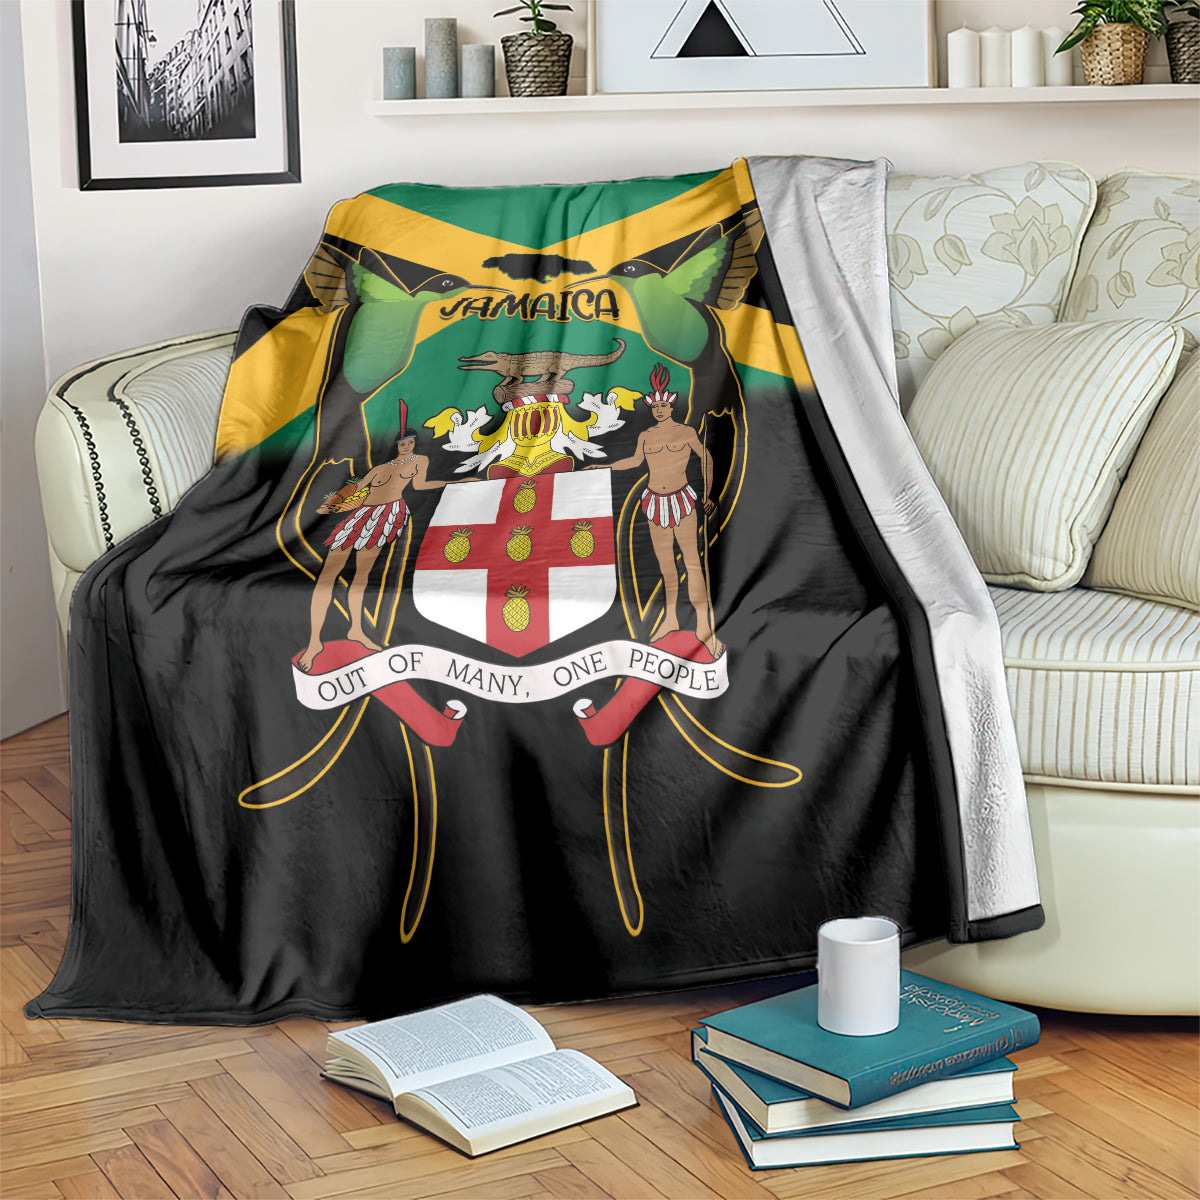 Jamaica Independence Day Blanket Jumieka Coat Of Arms Mix Hummingbird